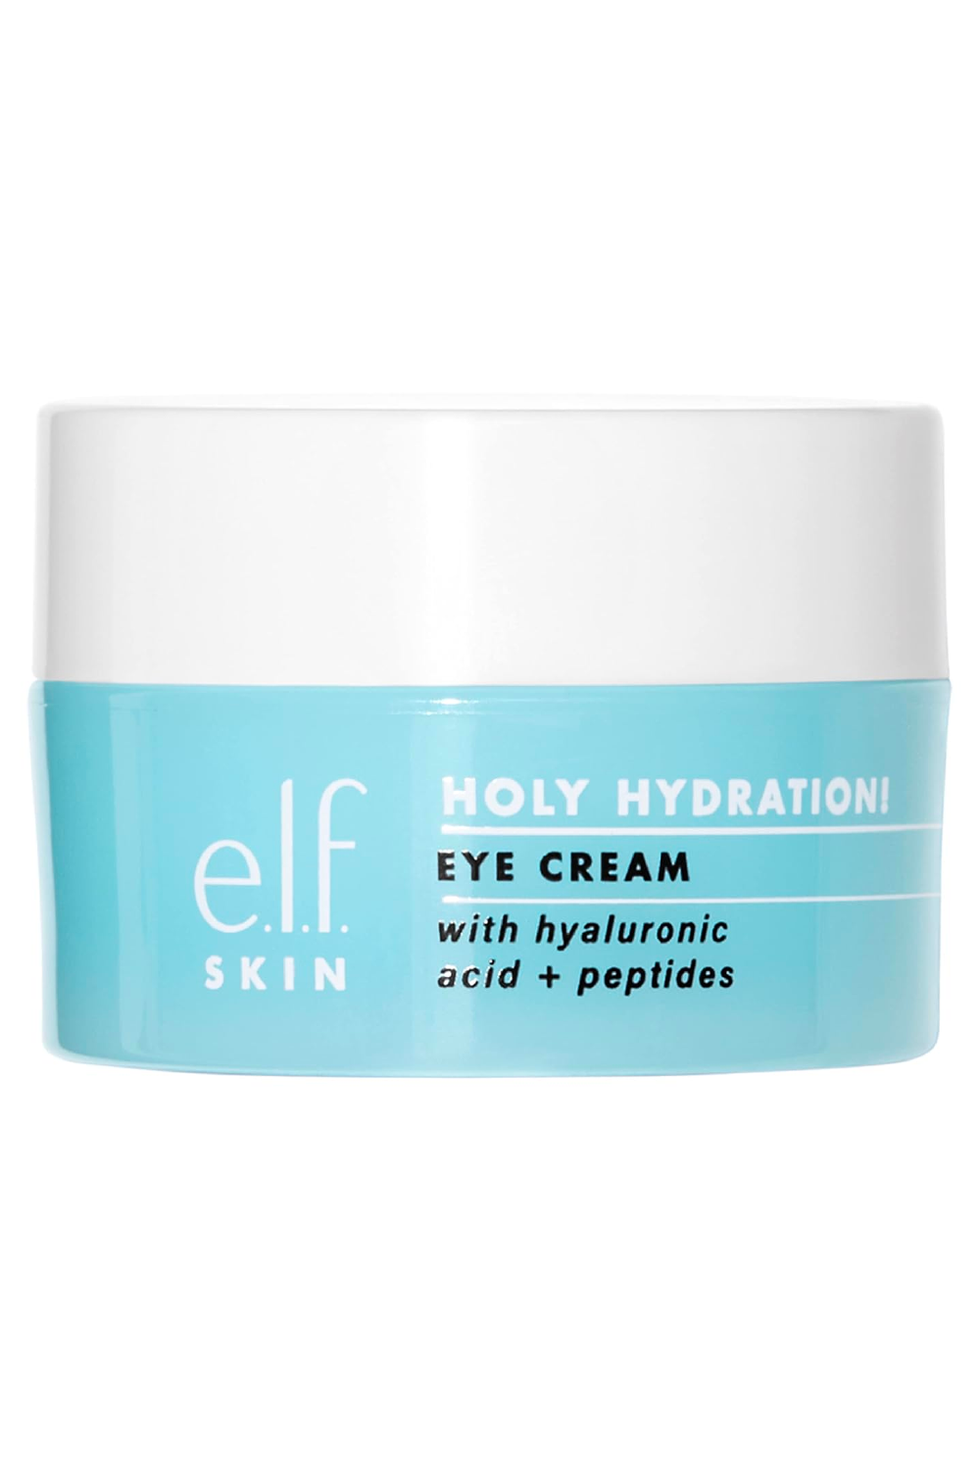 Holy Hydration! Eye Cream